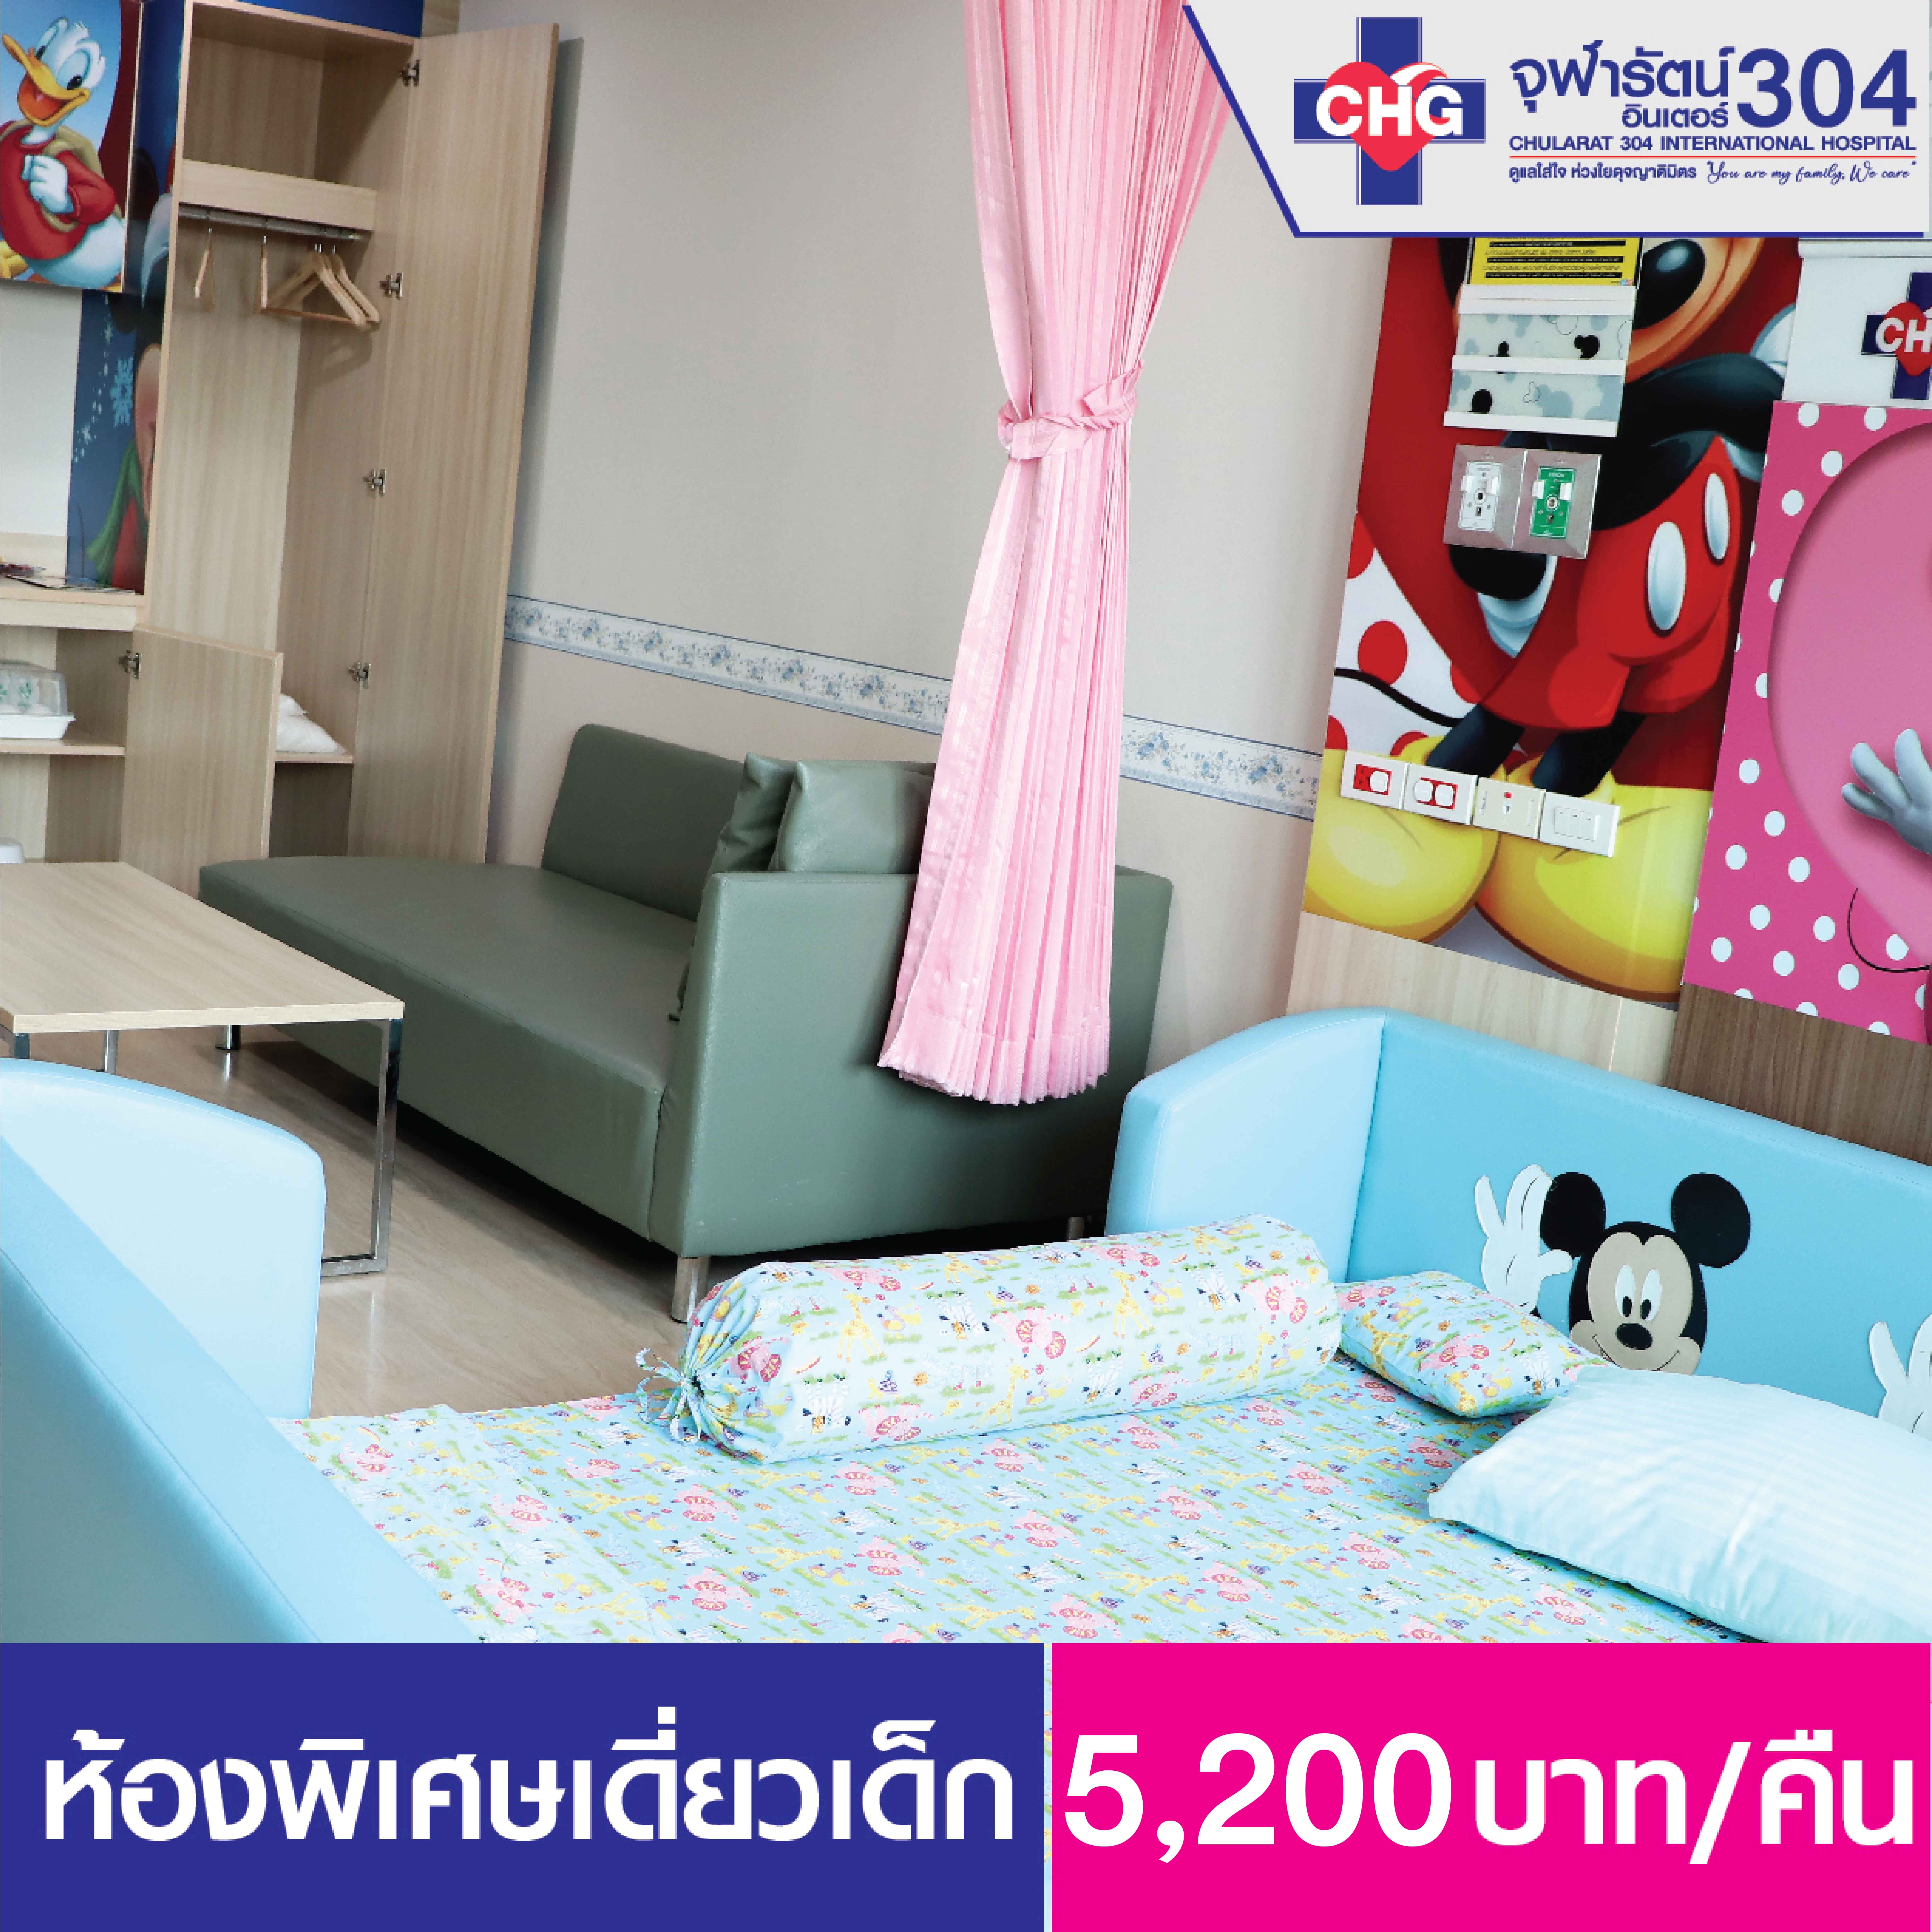 ห้องพักผู้ป่วยใน ห้องพิเศษเดี่ยวเด็ก - ห้องพักผู้ป่วยใน - โรงพยาบาลจุฬารัตน์ 304 อินเตอร์